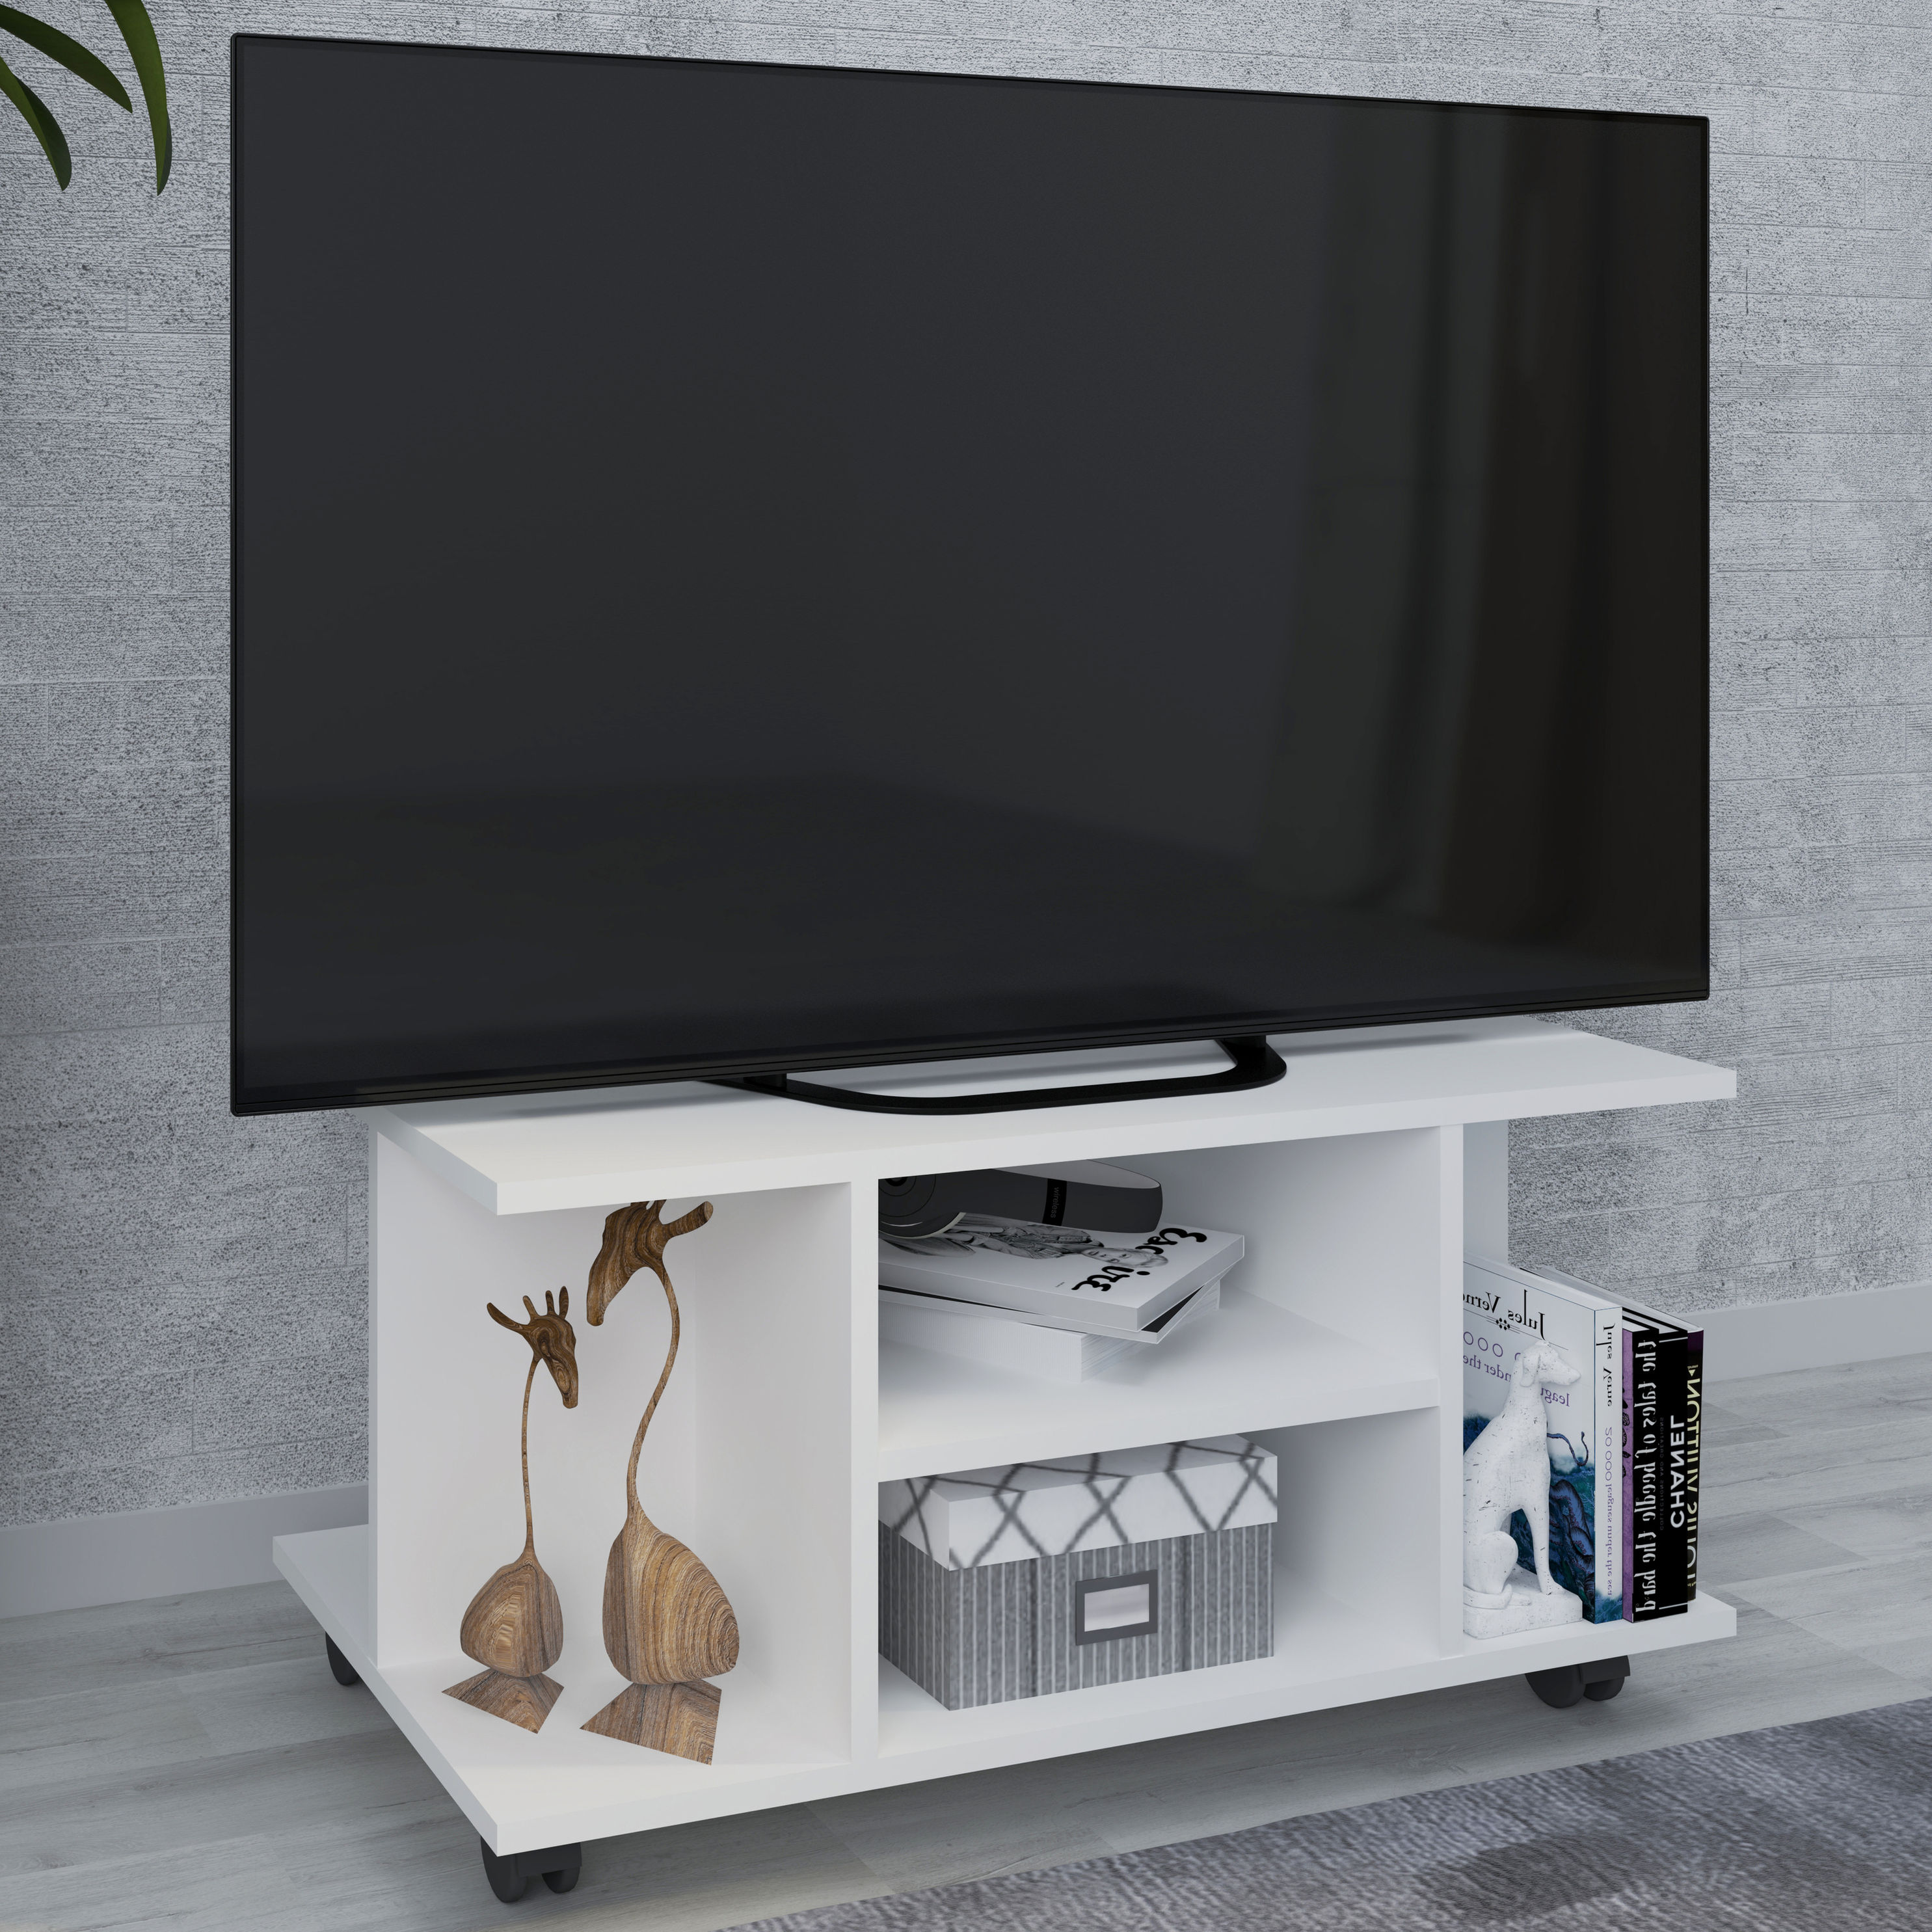 VCM Holz TV Lowboard Rollen Fernsehschrank Tisch Konsole rollbar Möbel  Fernsehtisch Findalo Farbe: Weiß | Weltbild.de